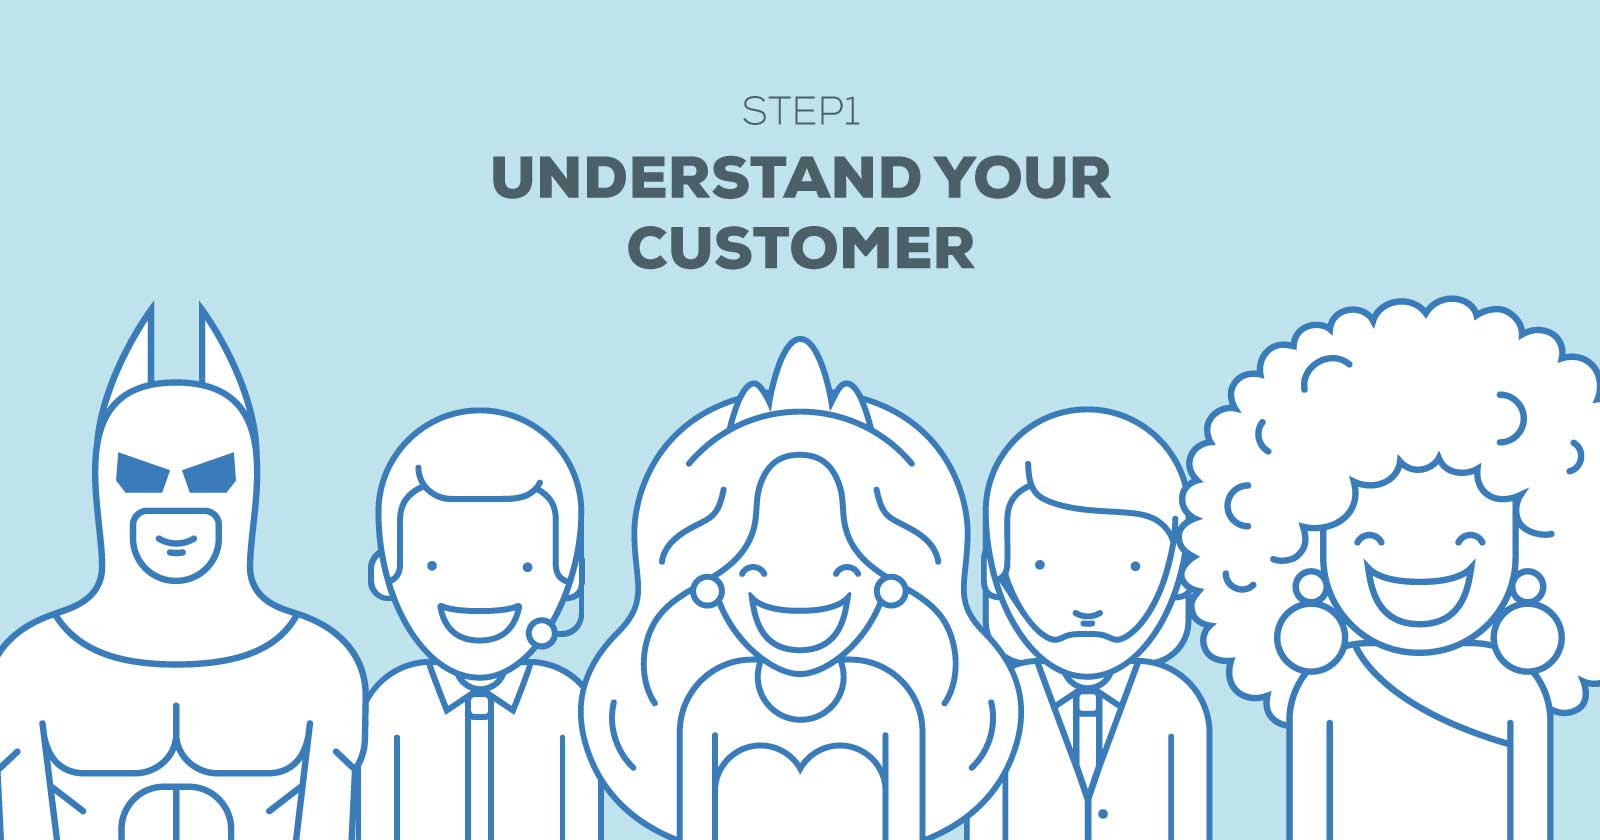 Understanding Your Customer